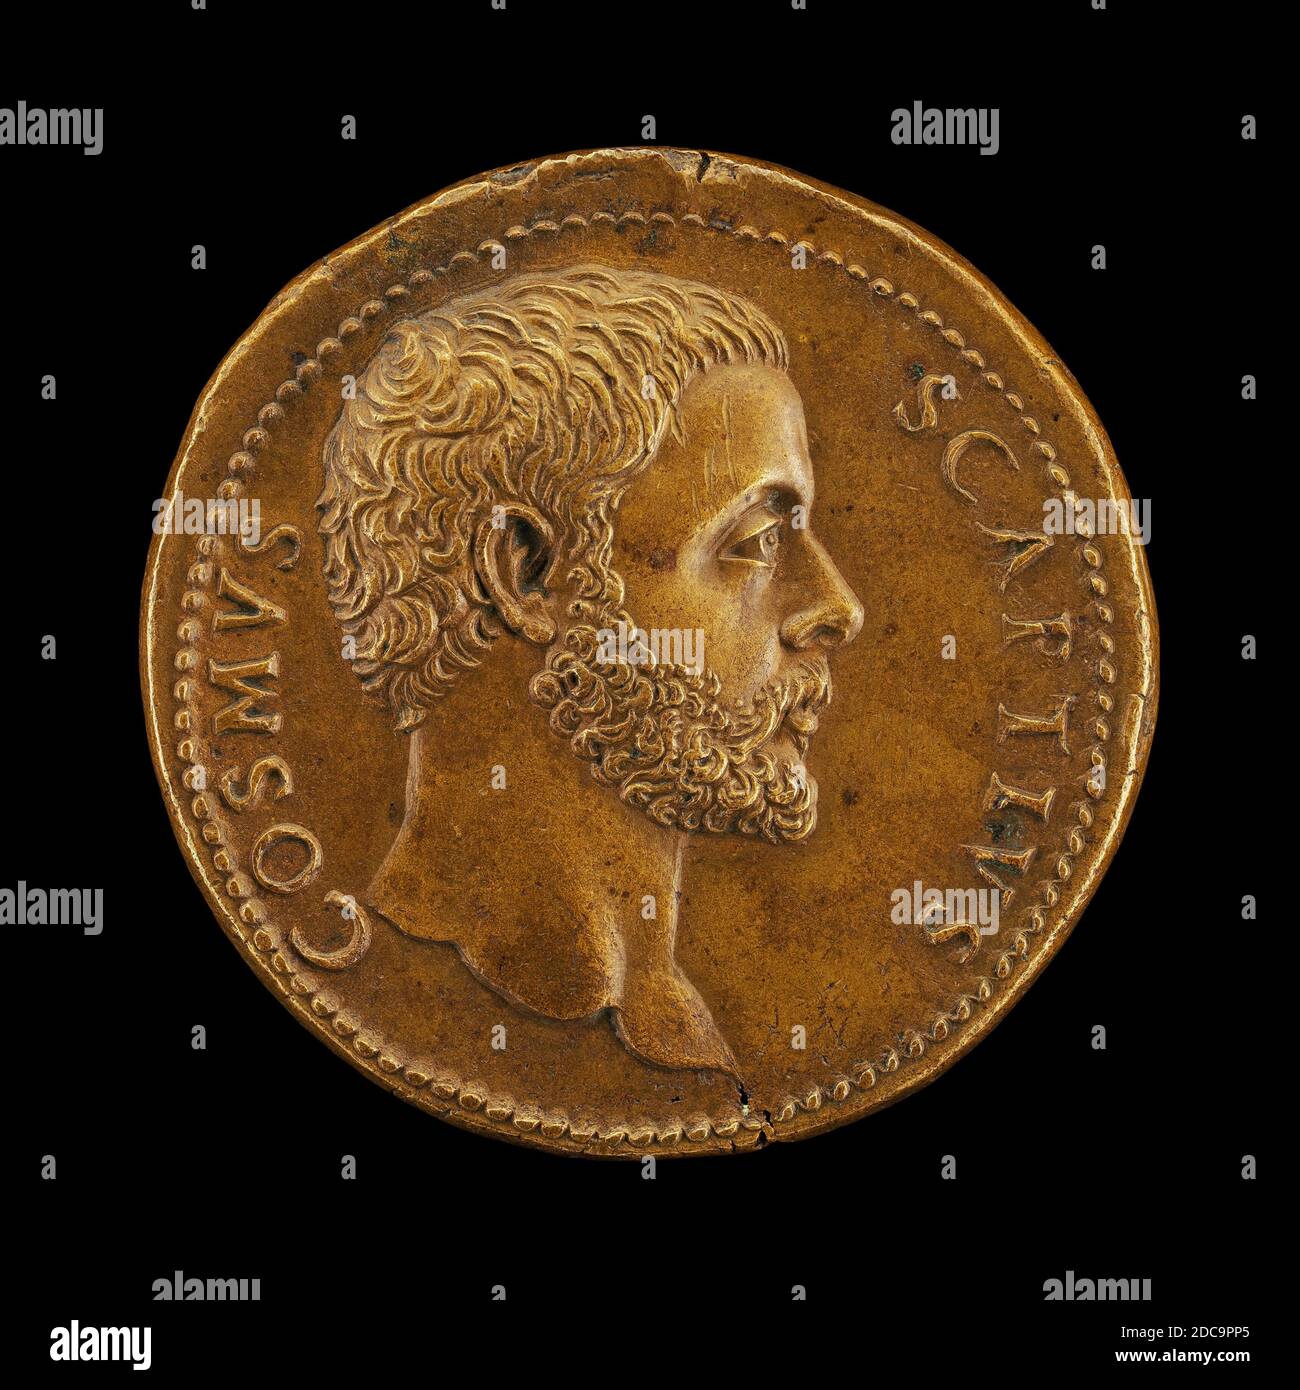 Giovanni da CAVINO, (artista), Paduan, 1500 - 1570, Cosimo Scapti, bronzo/Strisciato, totale (diametro): 3.85 cm (1 1/2 in.), peso lordo: 34.91 gr (0.077 lb.), asse: 6:00 Foto Stock